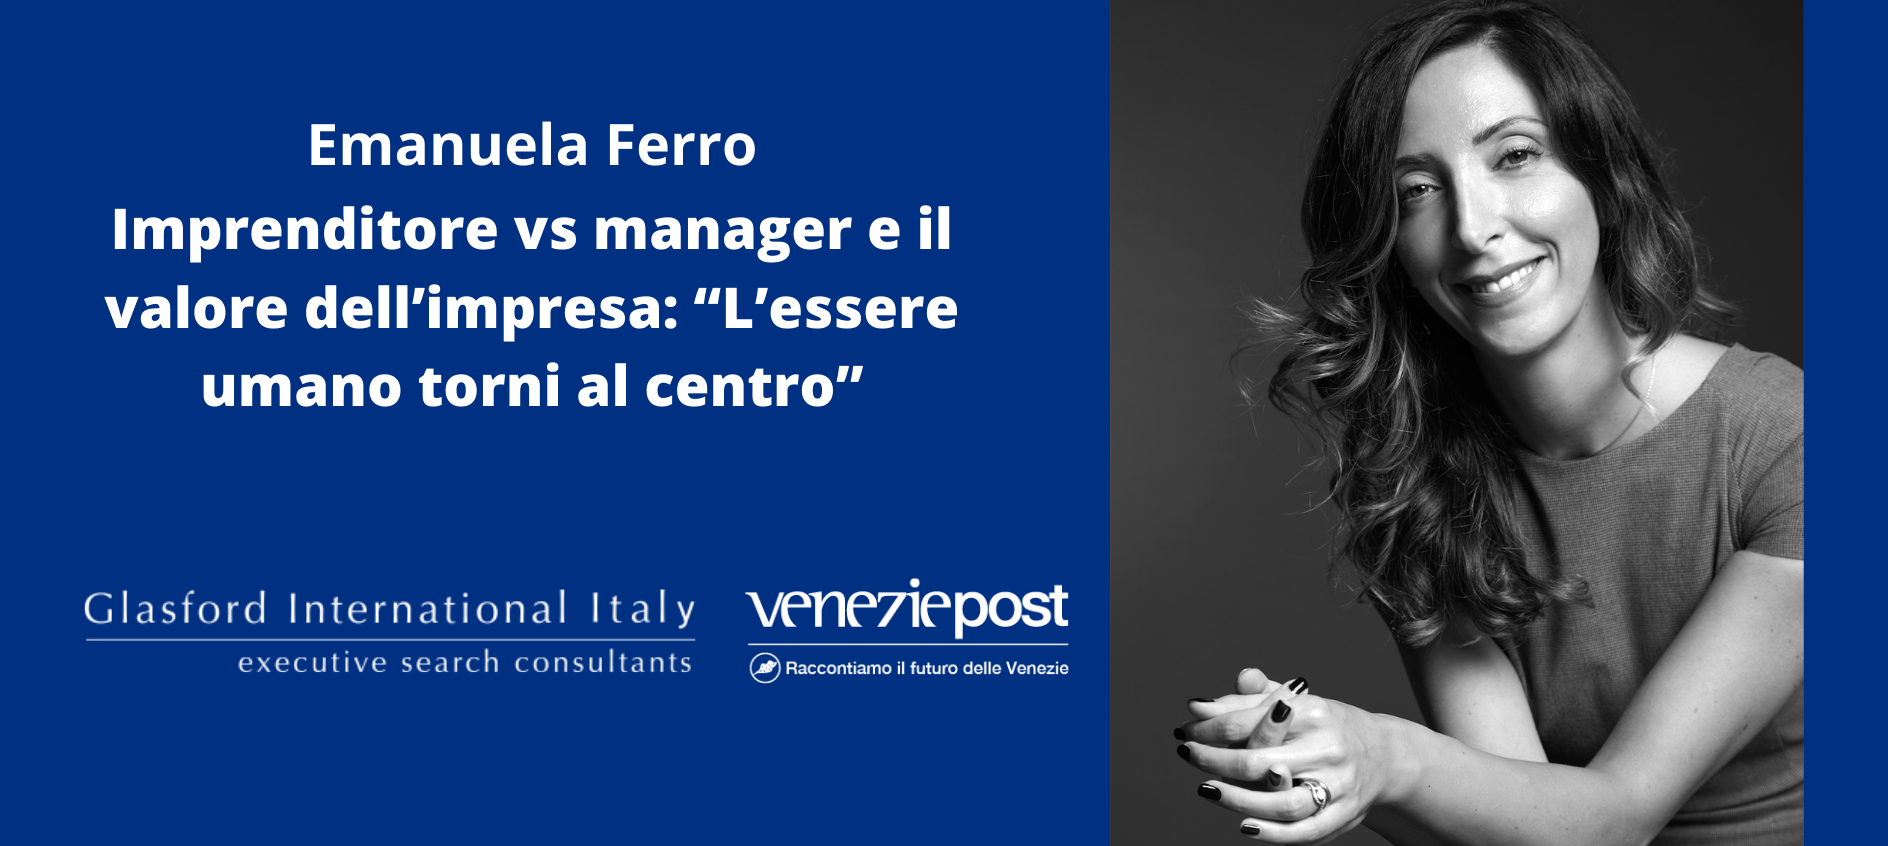 Emanuela Ferro Intervista Imprenditore vs Manager e il valore dell'impresa